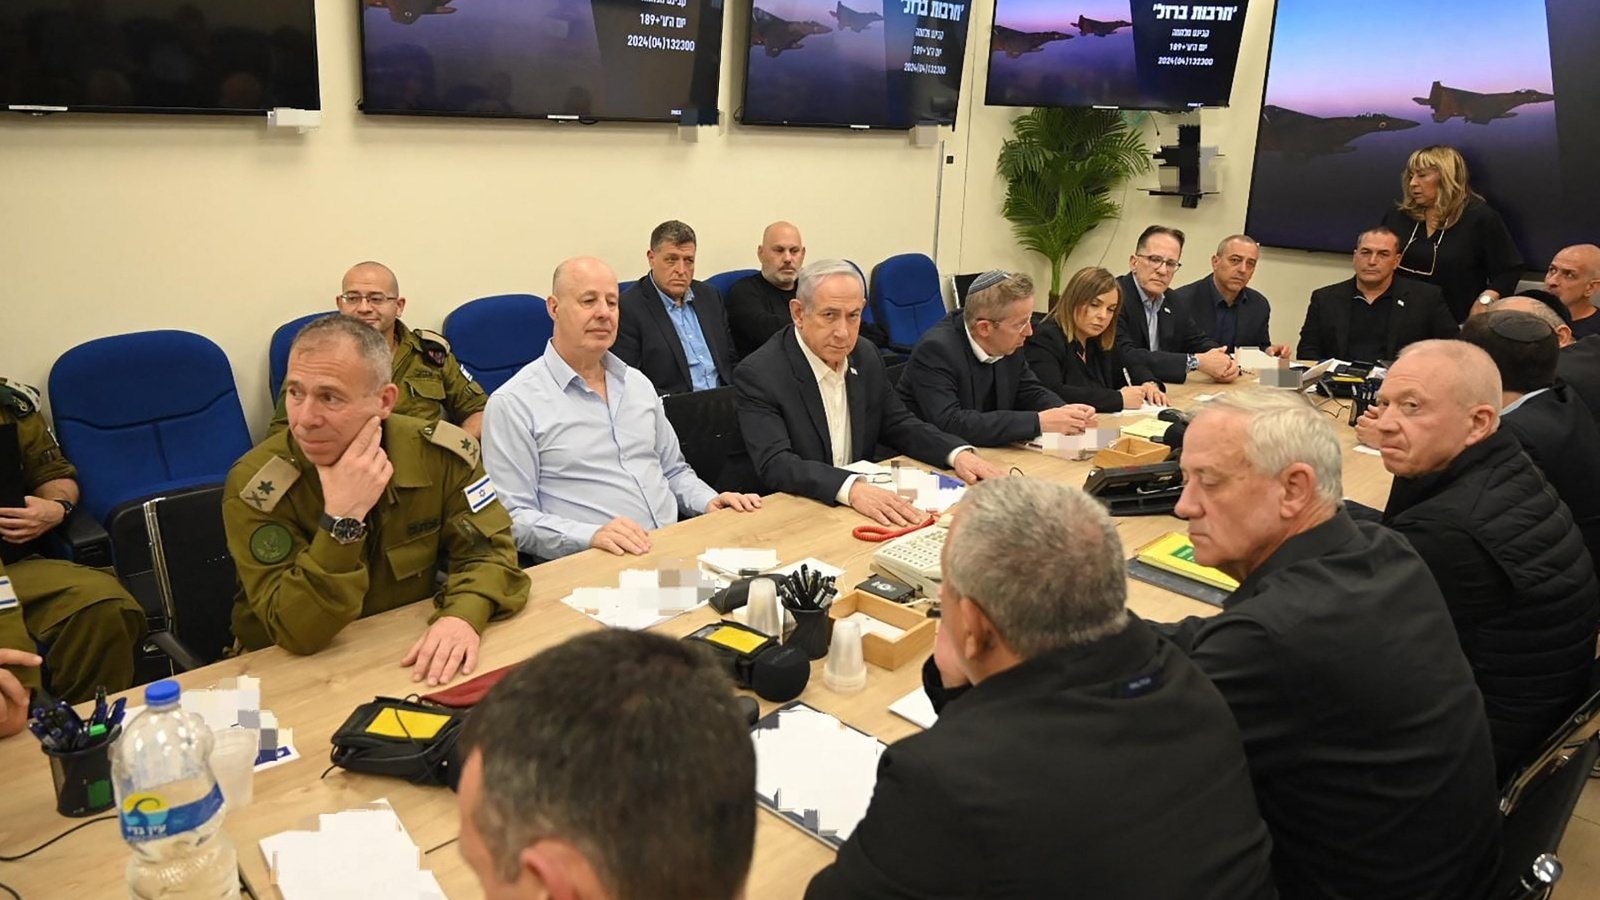 مجلس وزراء الحرب الإسرائيلي يضم نتانياهو ووزير الدفاع يوآف غالانت ووزير الدفاع السابق بيني غانتس وعددا من المراقبين